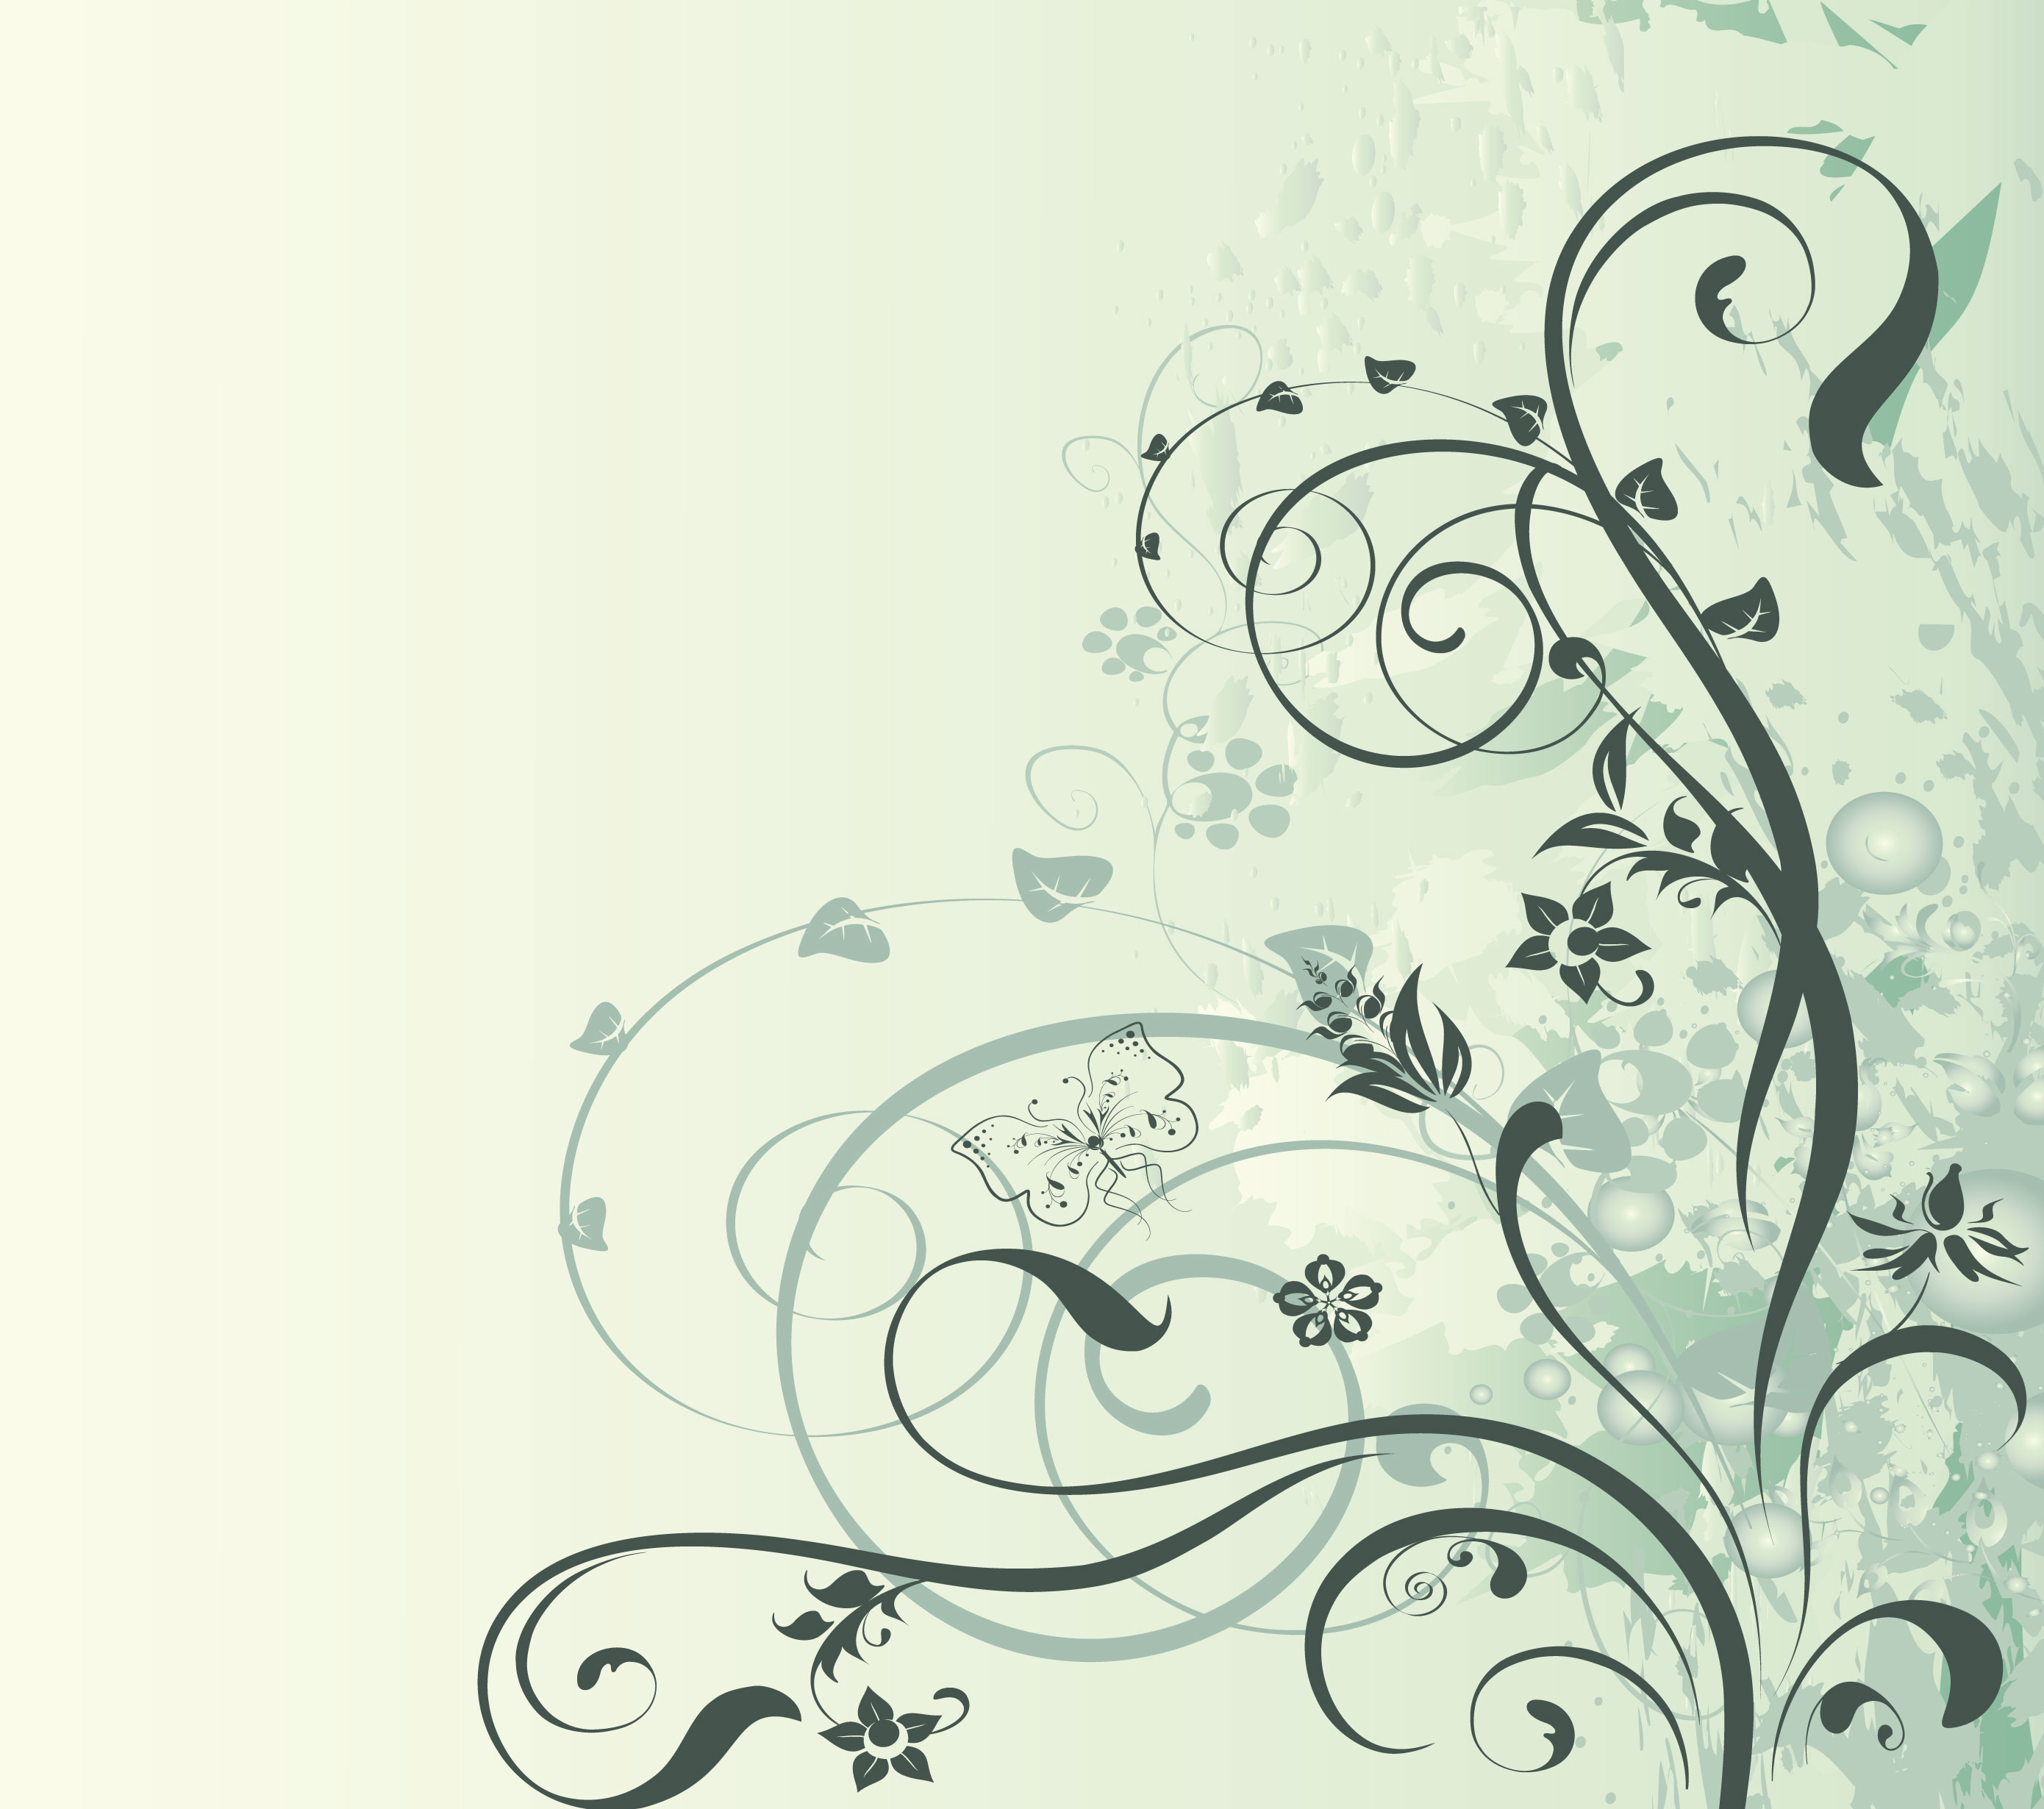 花のイラスト フリー素材 壁紙 背景no 731 薄緑 シルエット 蝶